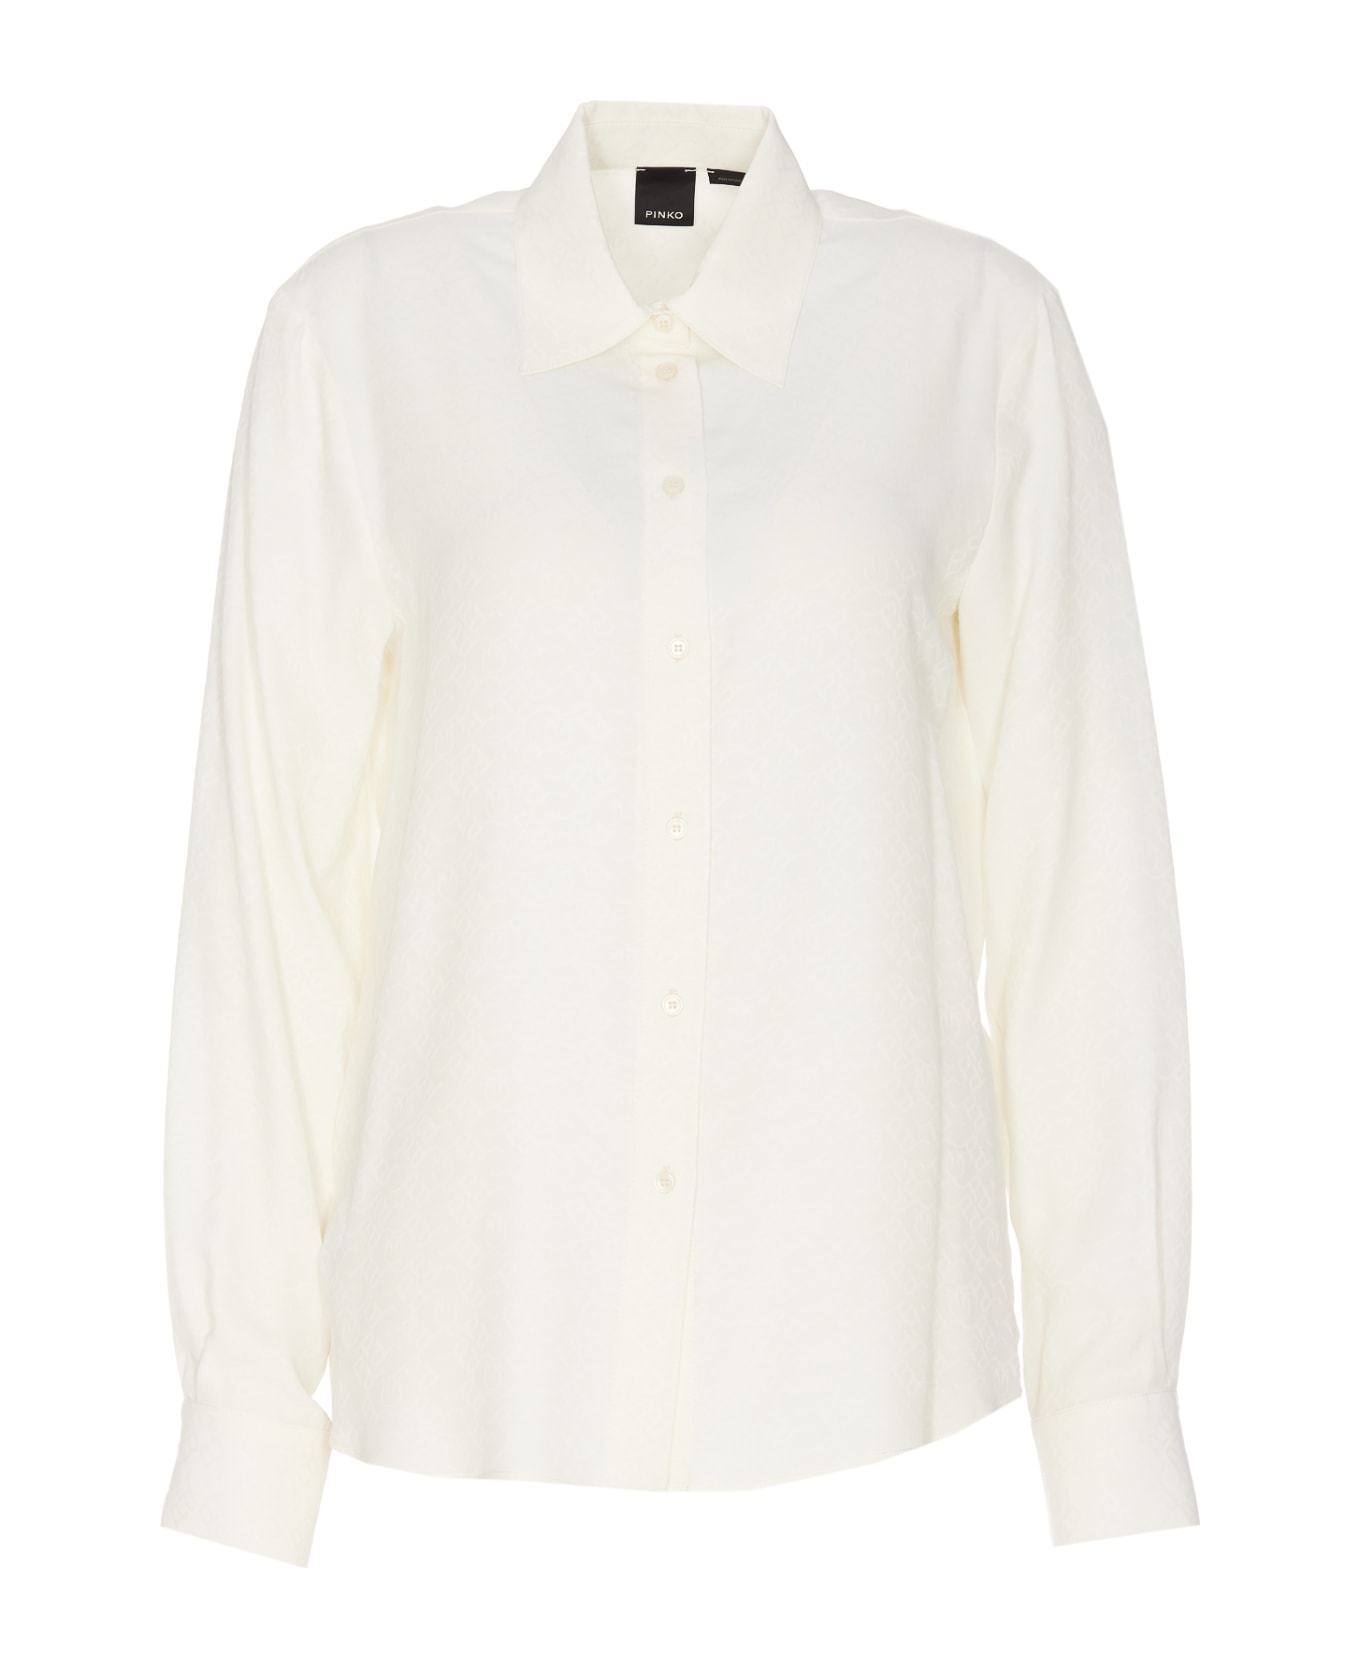 Pinko Smorzare Shirt - White